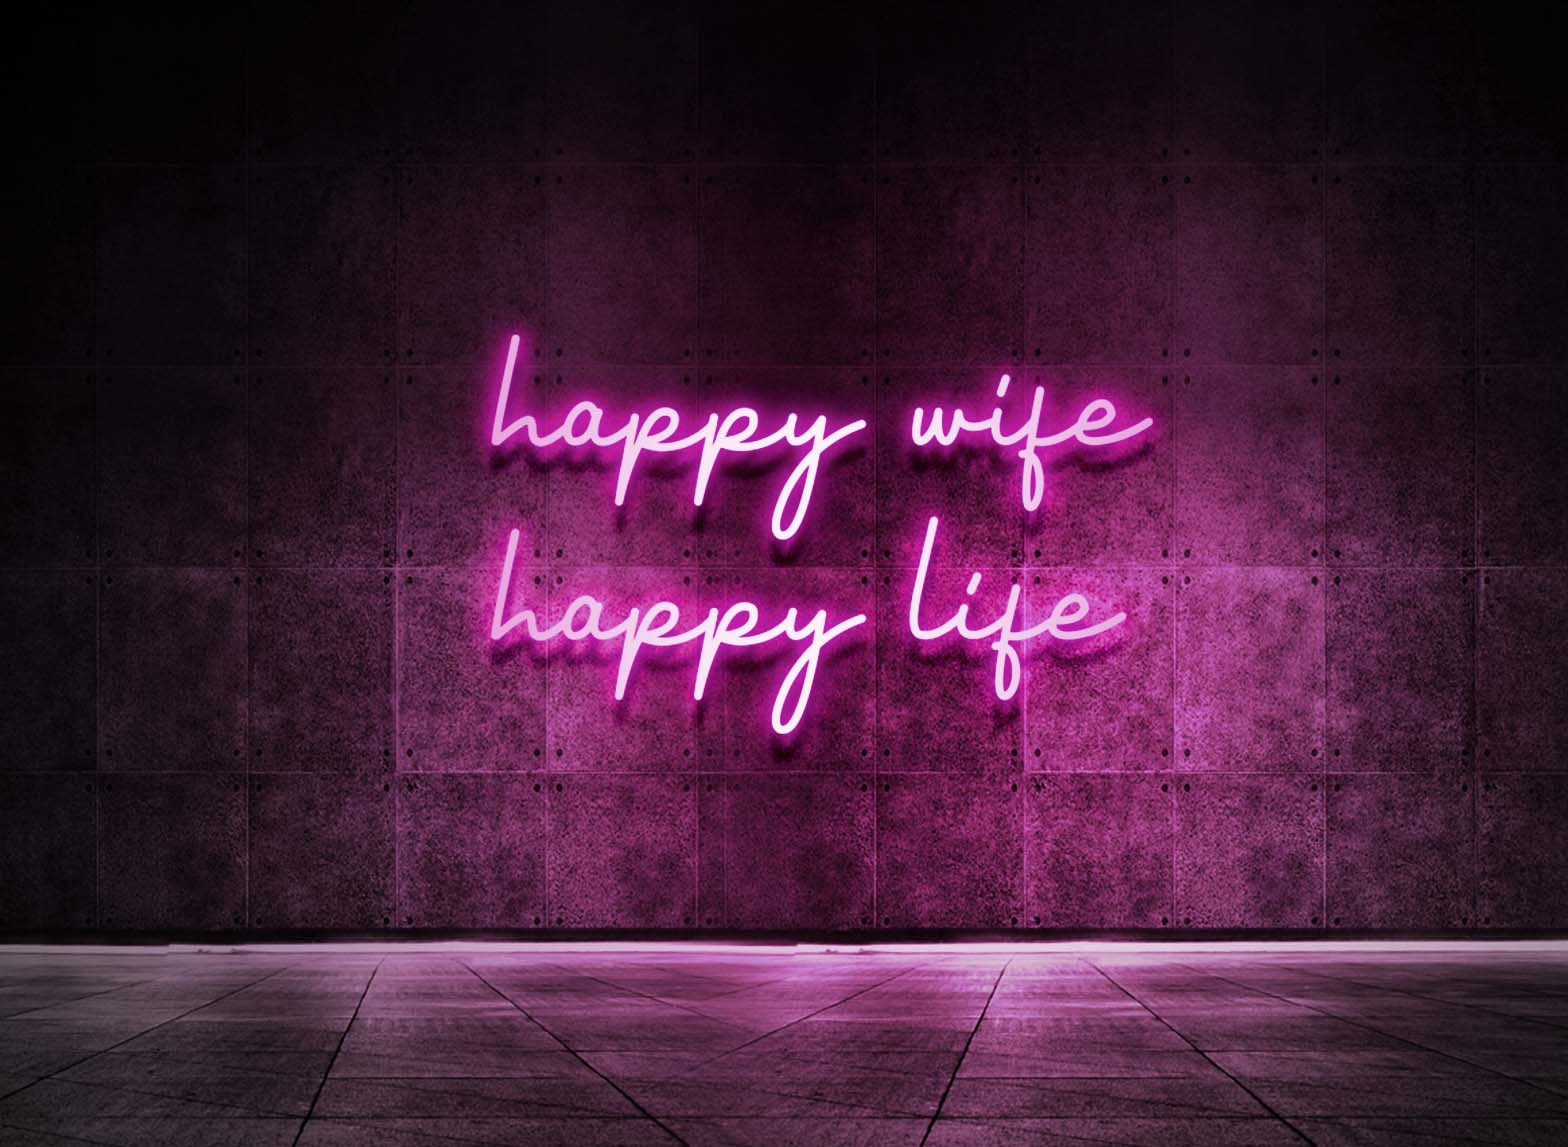 HAPPY WIFE HAPPY LIFE